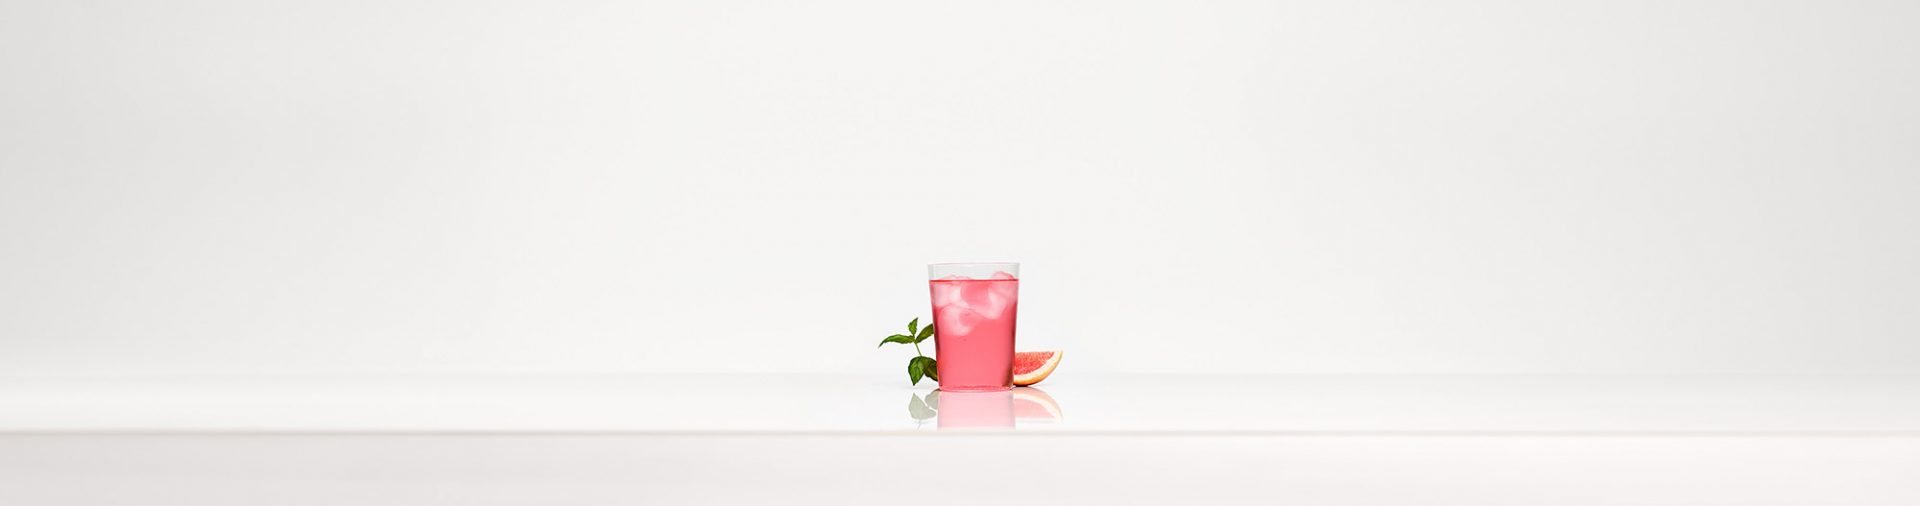 Un bicchiere di bevanda frizzante rosa davanti a uno sfondo bianco